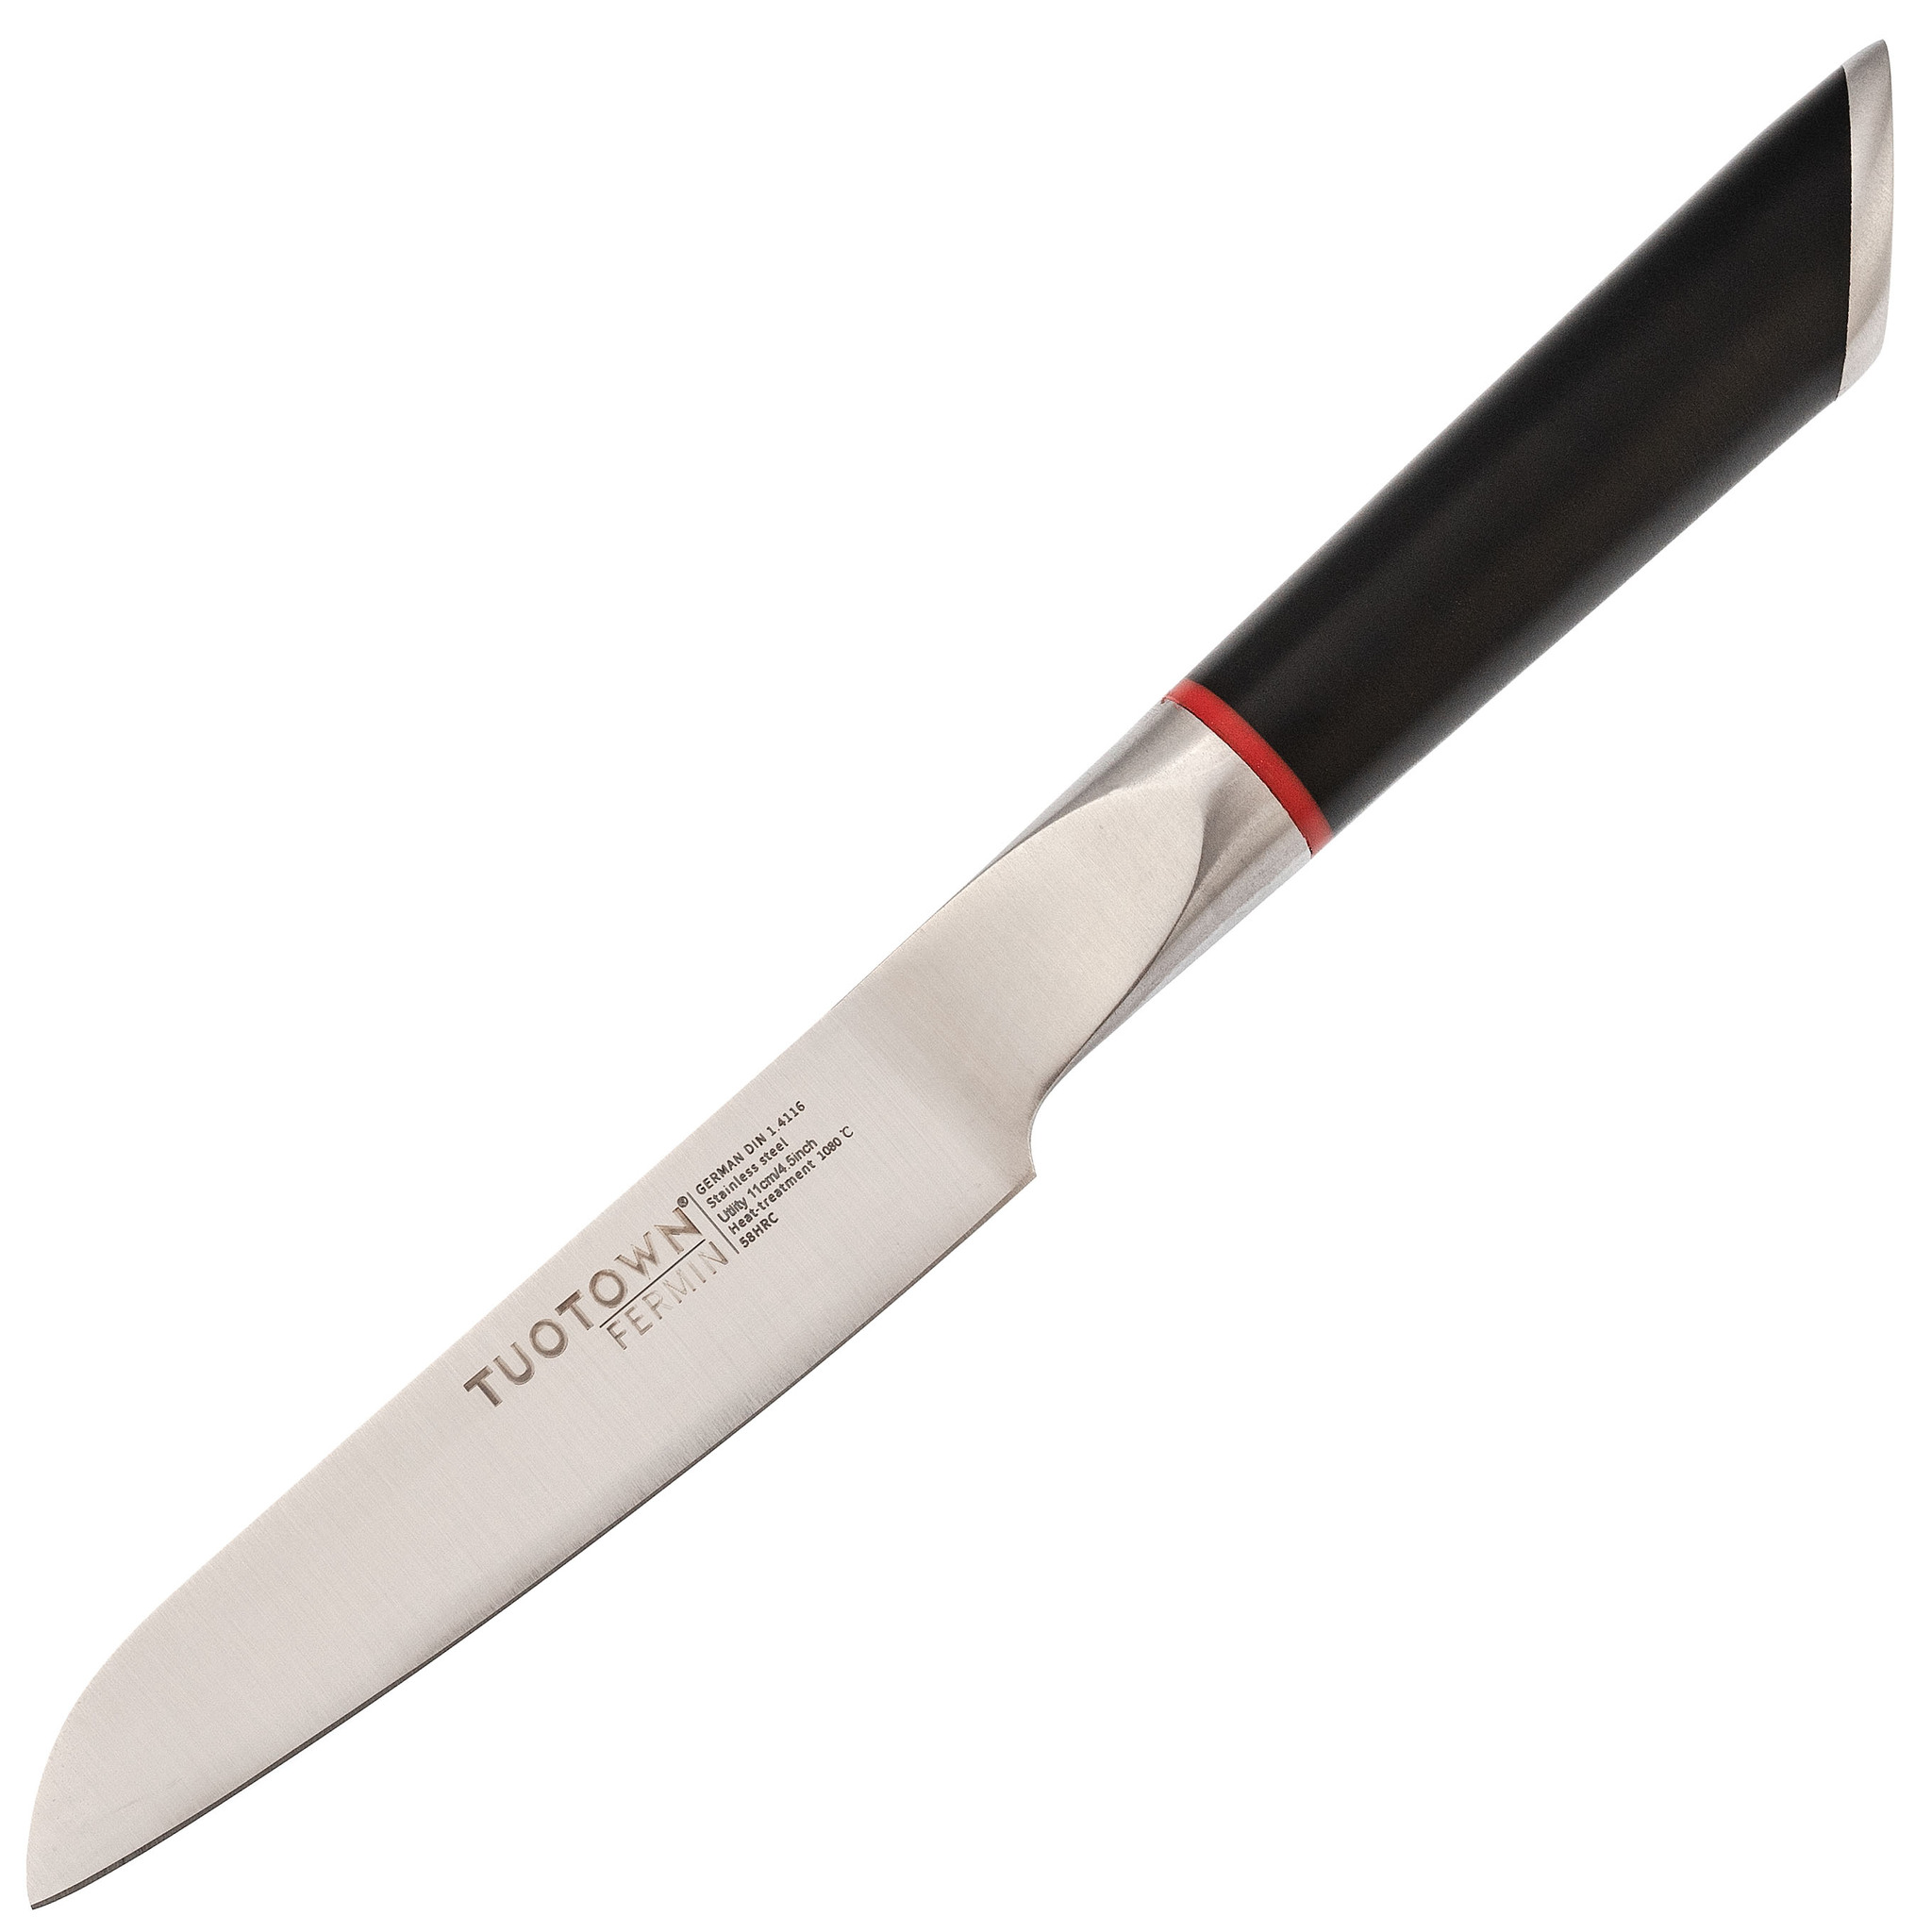 Кухонный нож универсальный, Tuotown серия Fermin, сталь 1.4116, рукоять пластик